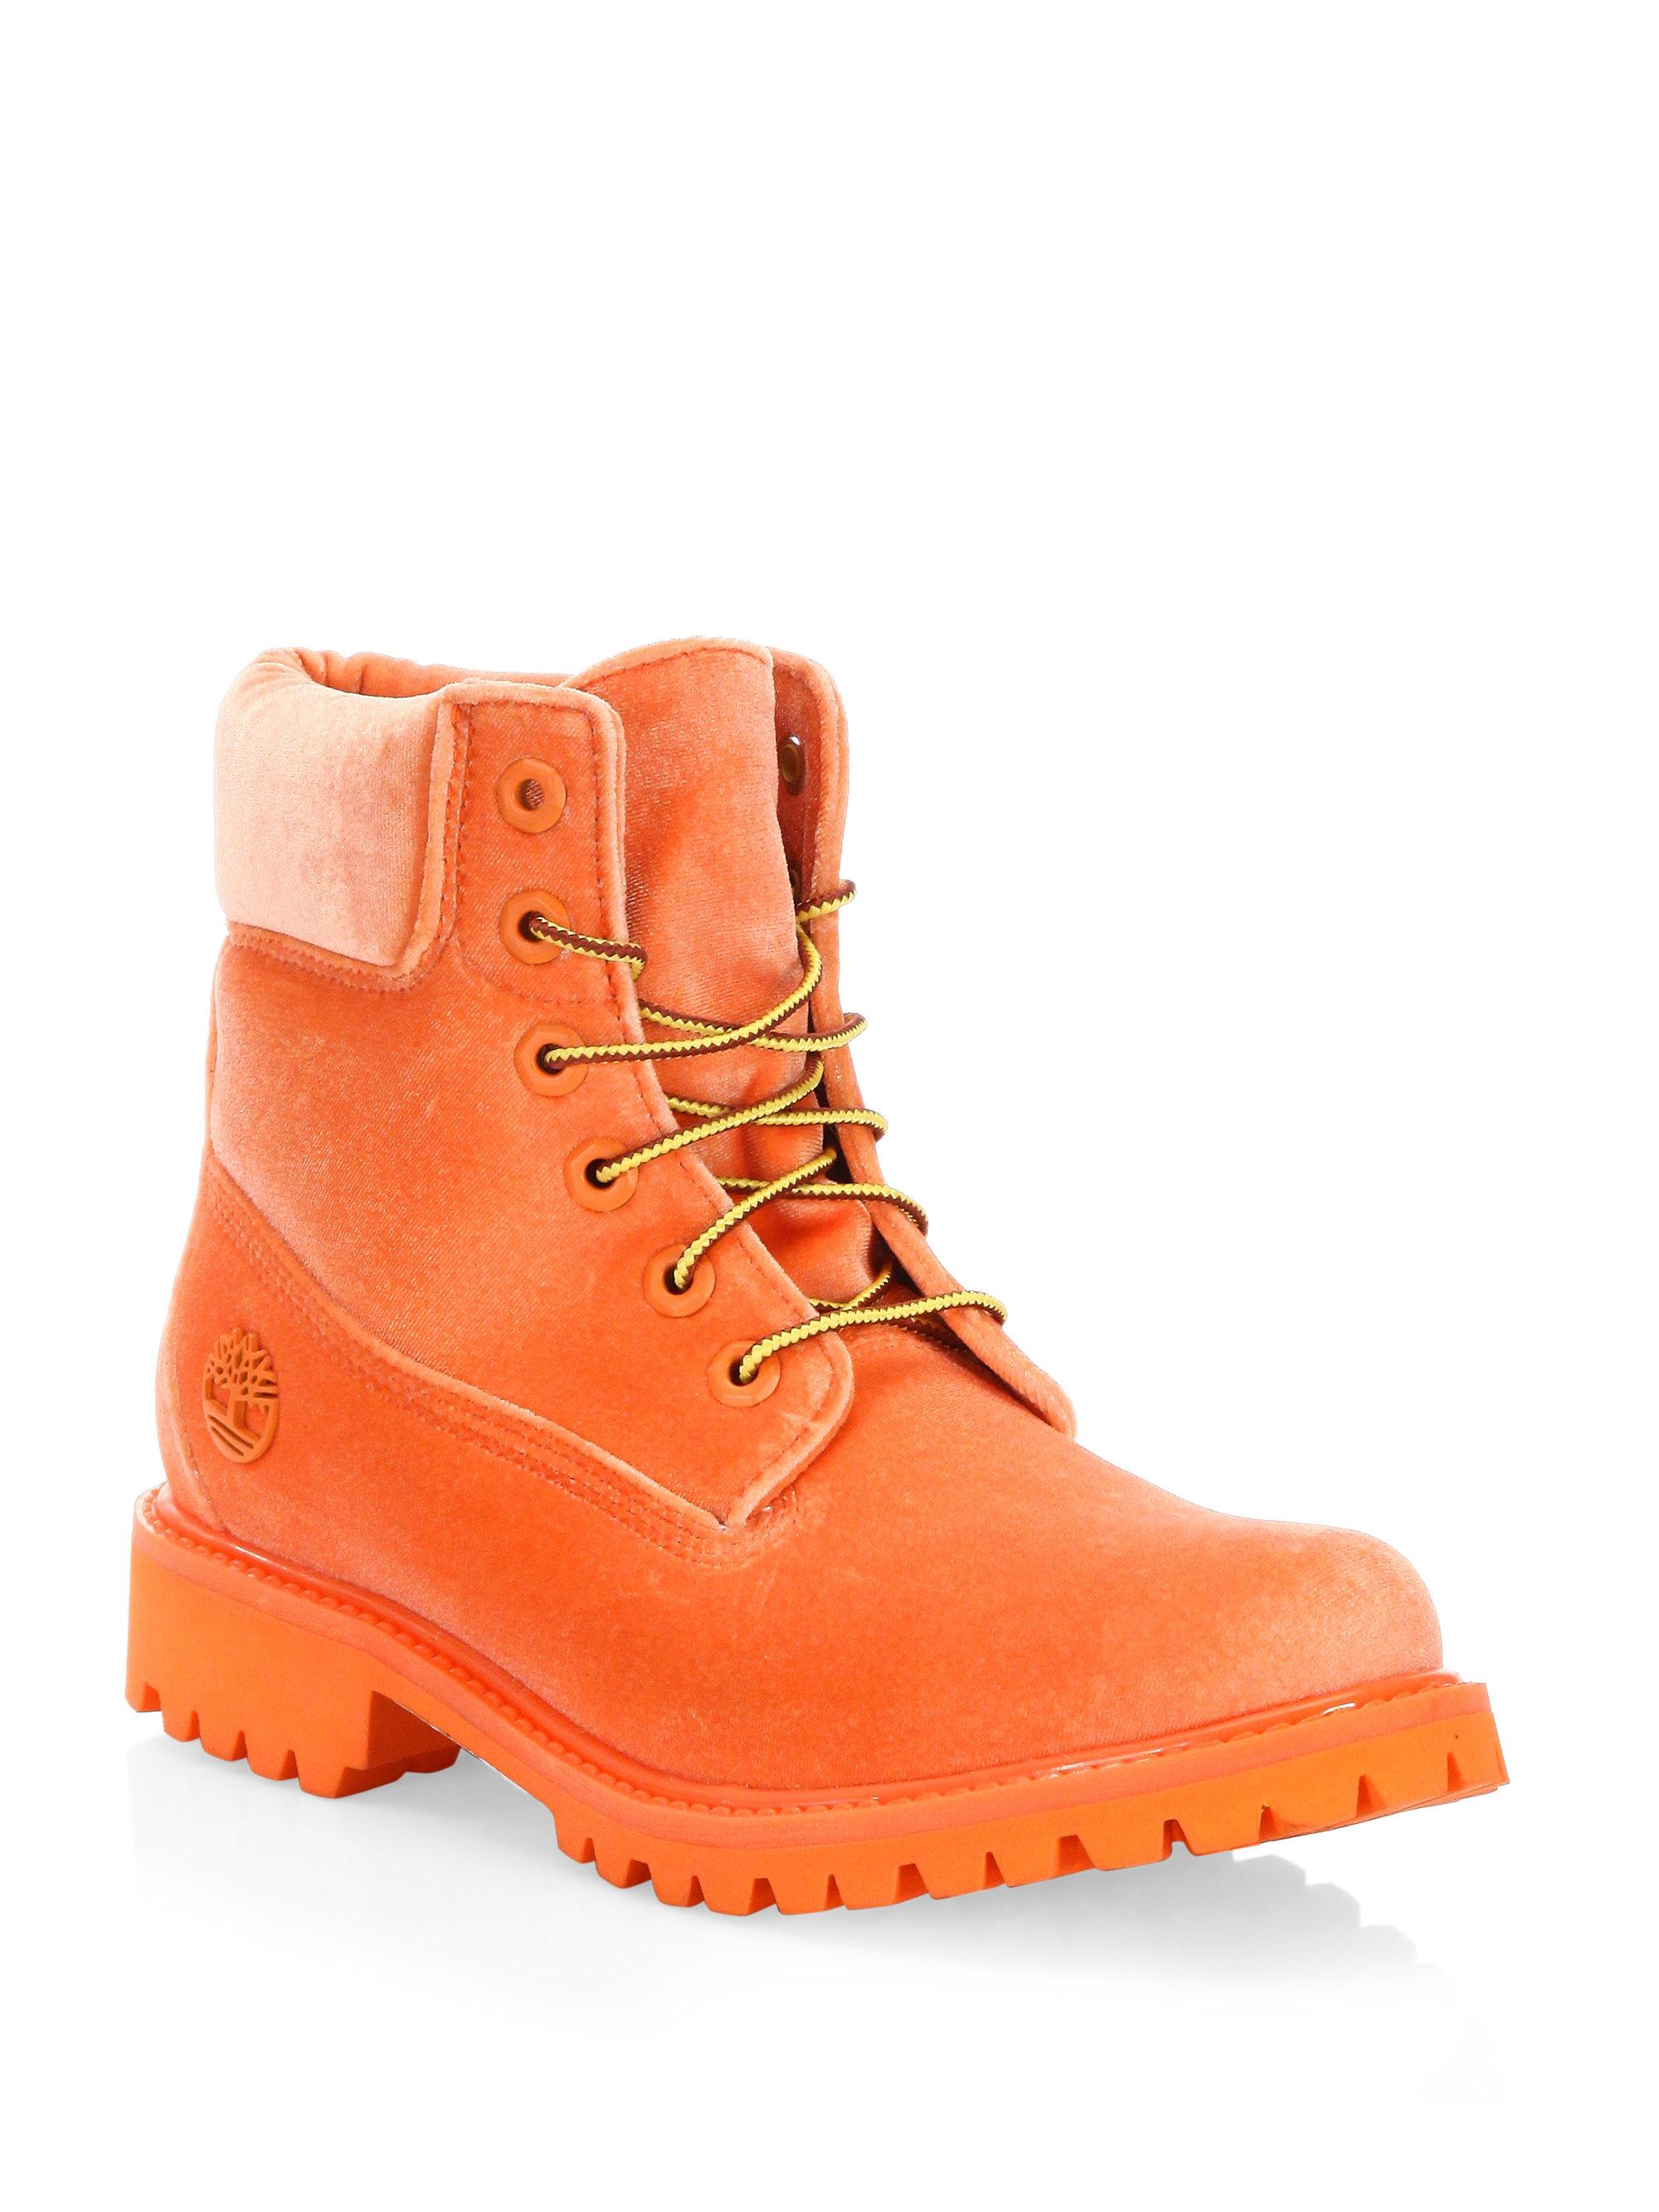 Off-White c/o Virgil Abloh X Timberland Orange Velvet Boots | Lyst